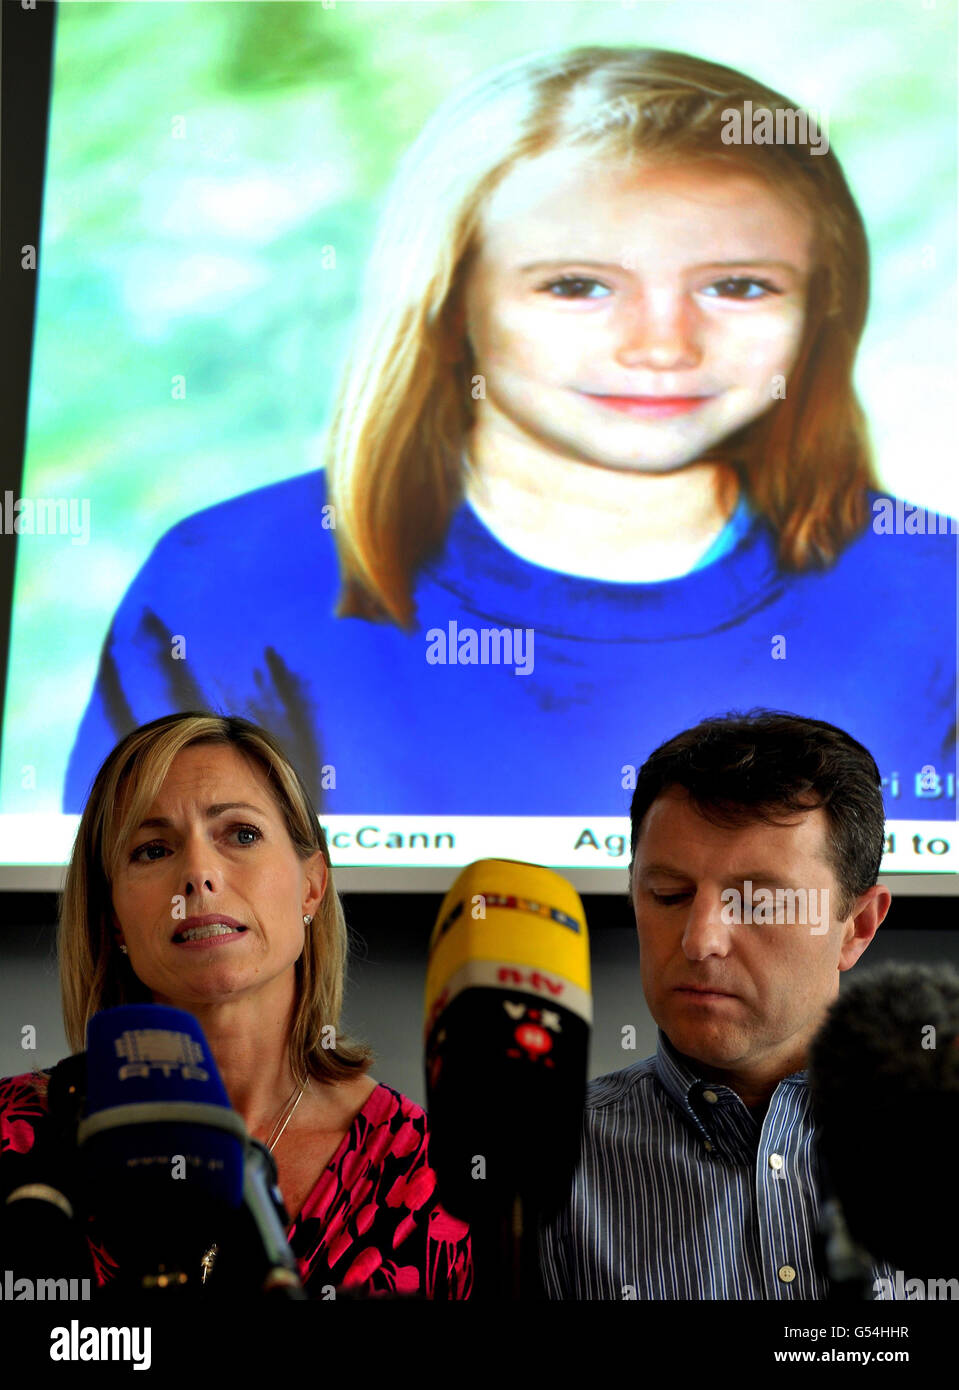 Gerry e Kate McCann la cui figlia Madeline scomparve da un appartamento in Portogallo cinque anni fa domani, parlano con i media in una conferenza stampa a Londra, dove sono seduti sotto una proiezione di quello che Madeline potrebbe essere oggi. Foto Stock